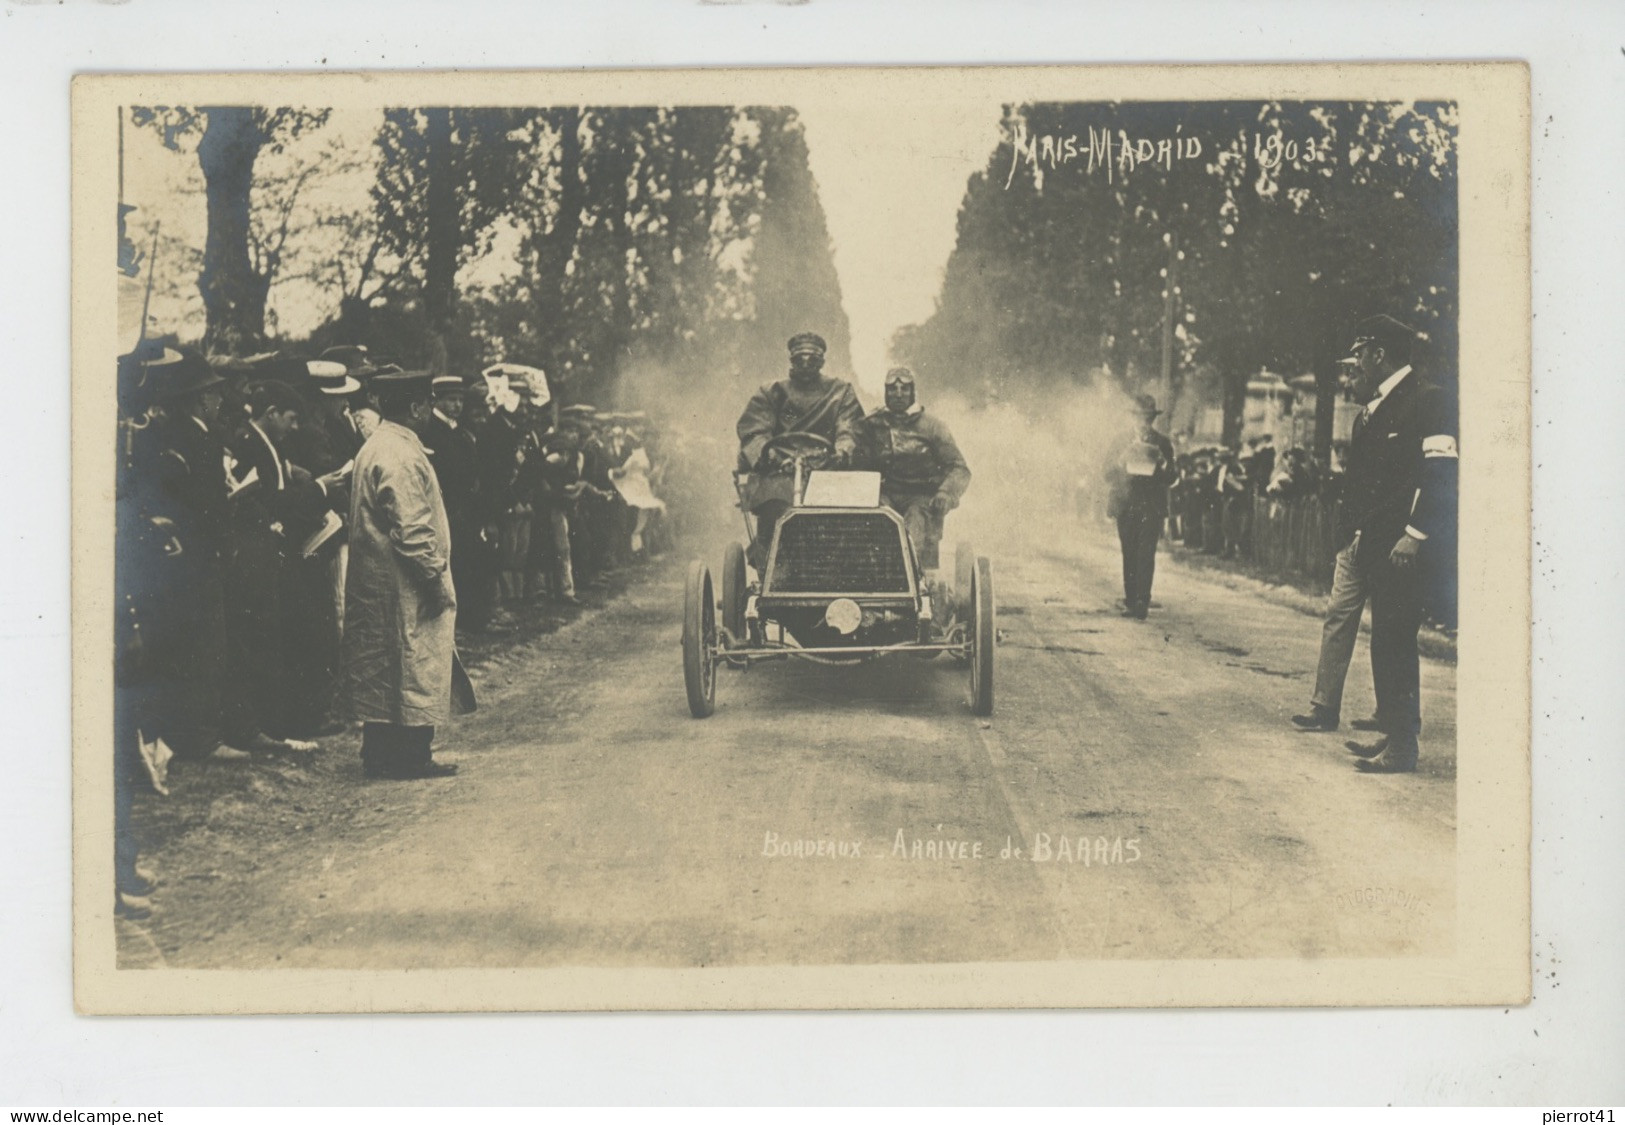 SPORT AUTOMOBILE - COURSE PARIS MADRID 1903 - BORDEAUX - Arrivée De BARRAS - Carte Photo Réalisée Par Photo SERENI - Rallyes